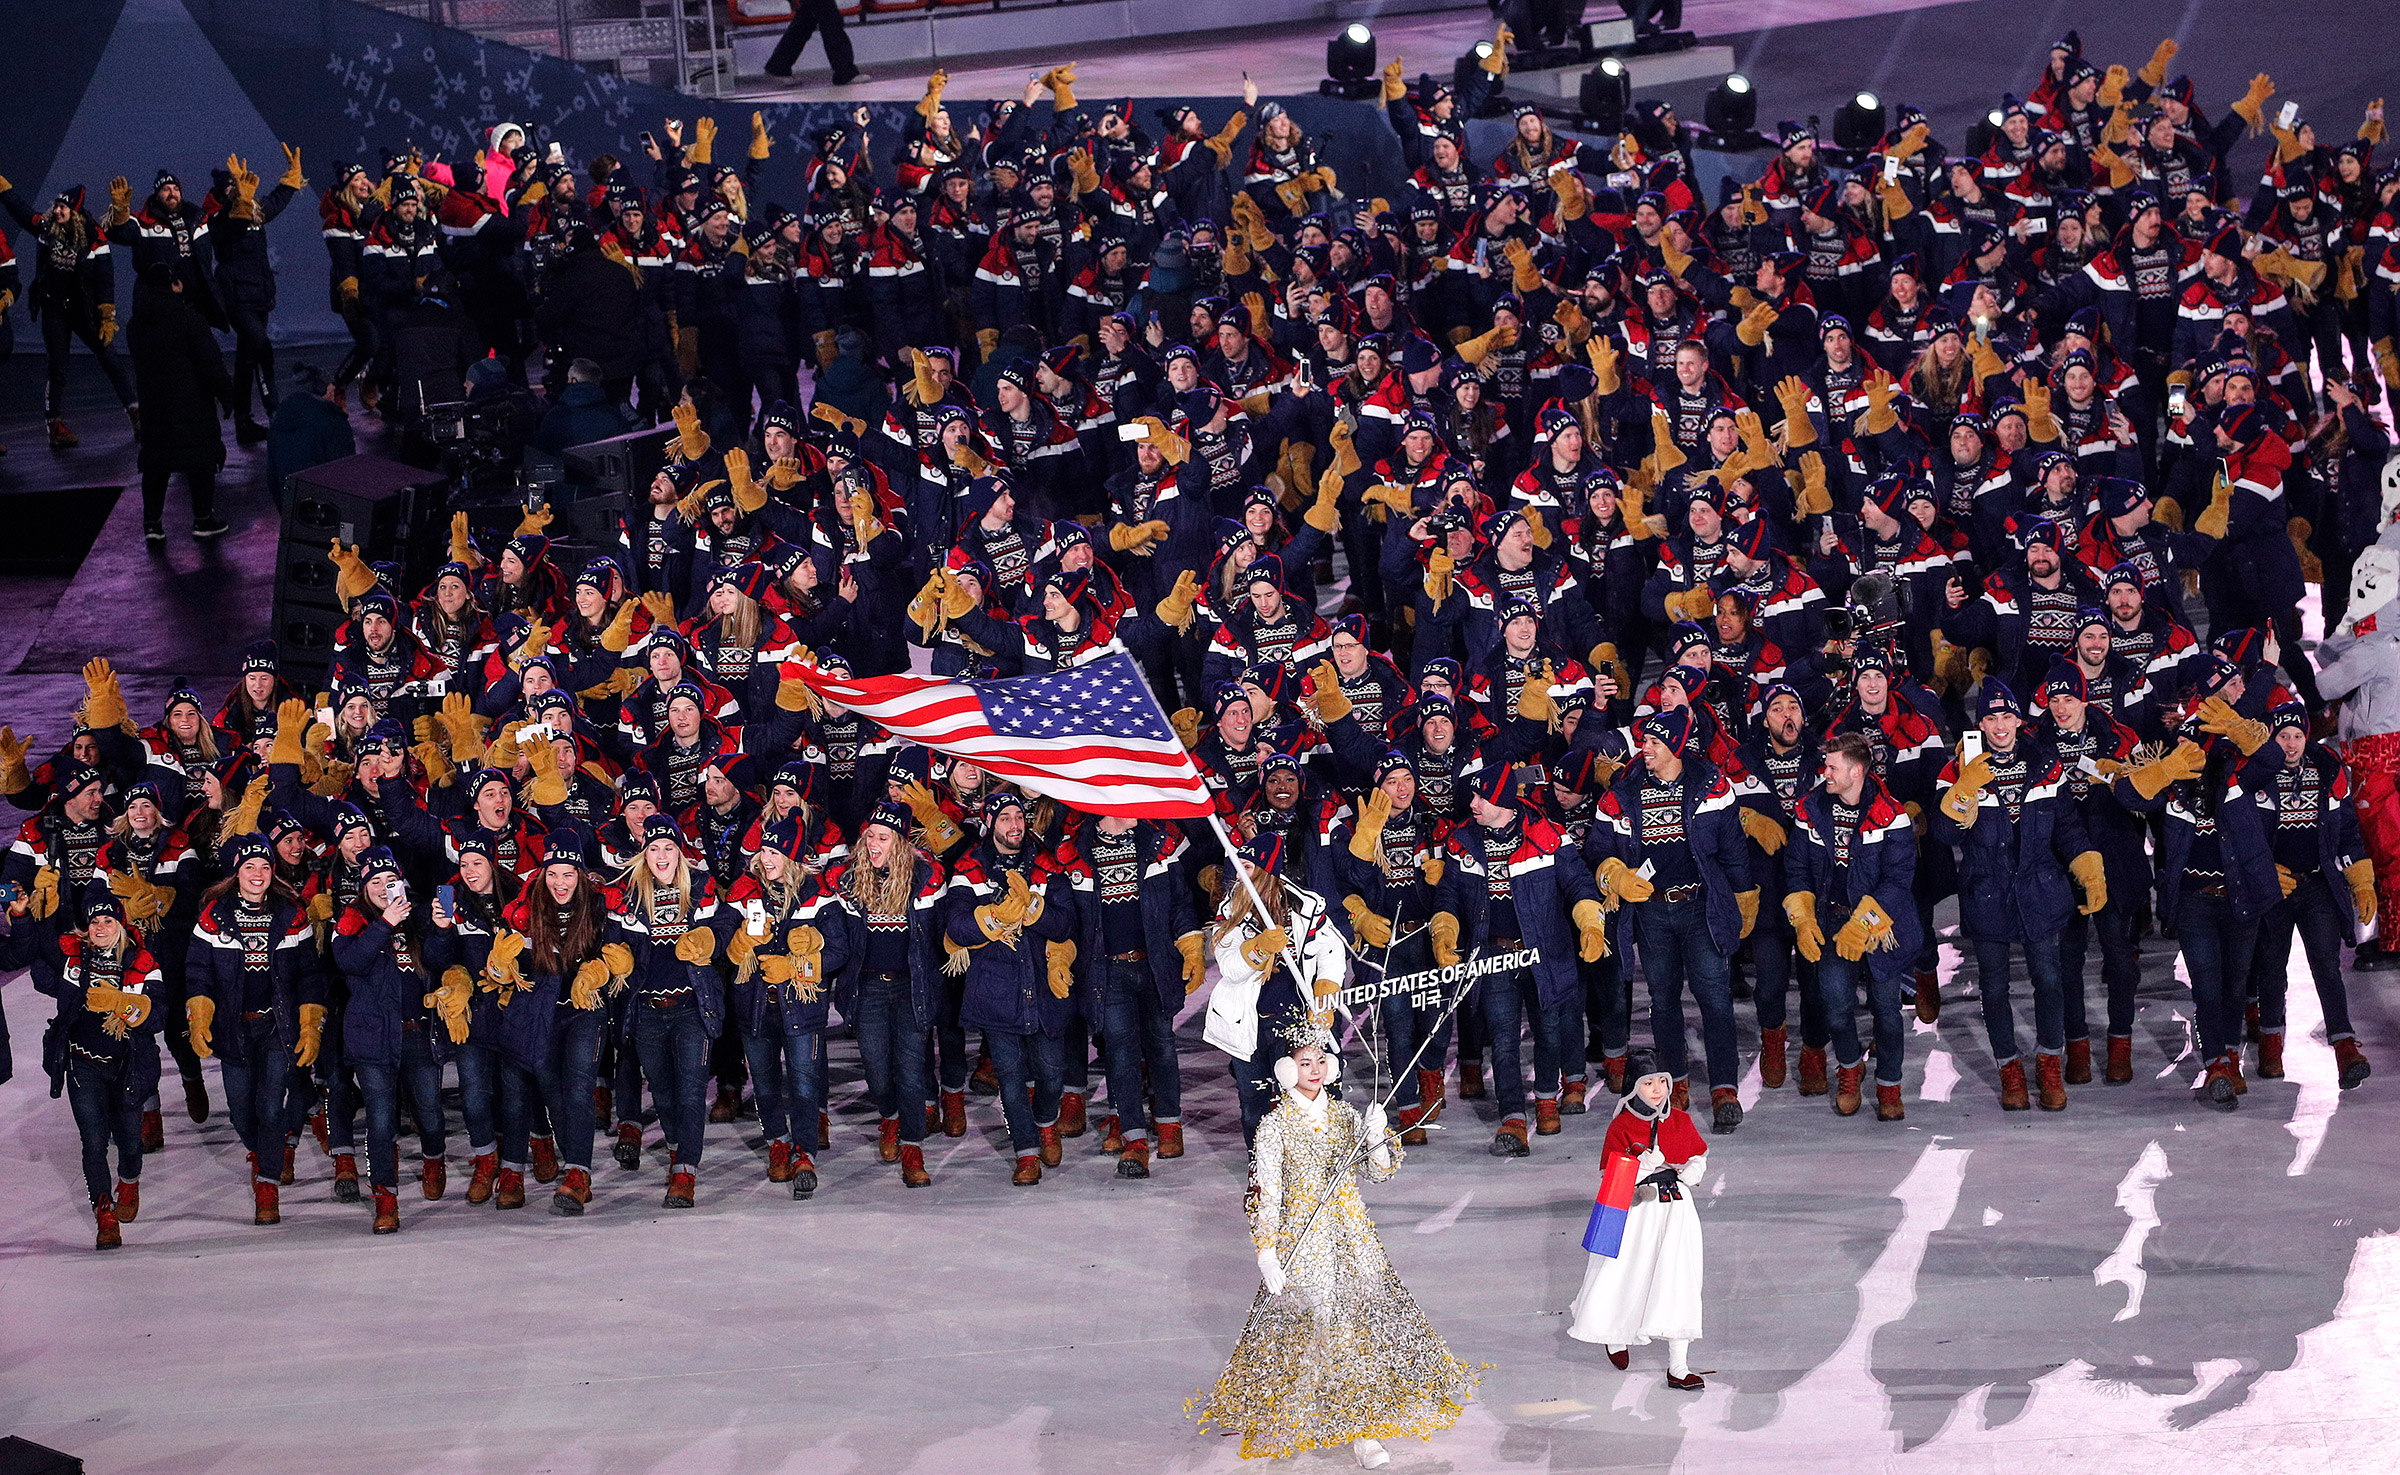 Сборная США оказалась самой многочисленной на Играх в Пхёнчхане:&nbsp;команду представляет ​241 человек. Американский флаг несла саночница Эрин Хэмлин, делегацию приветствовал приехавший на открытие вице-президент США Майк Пенс.
